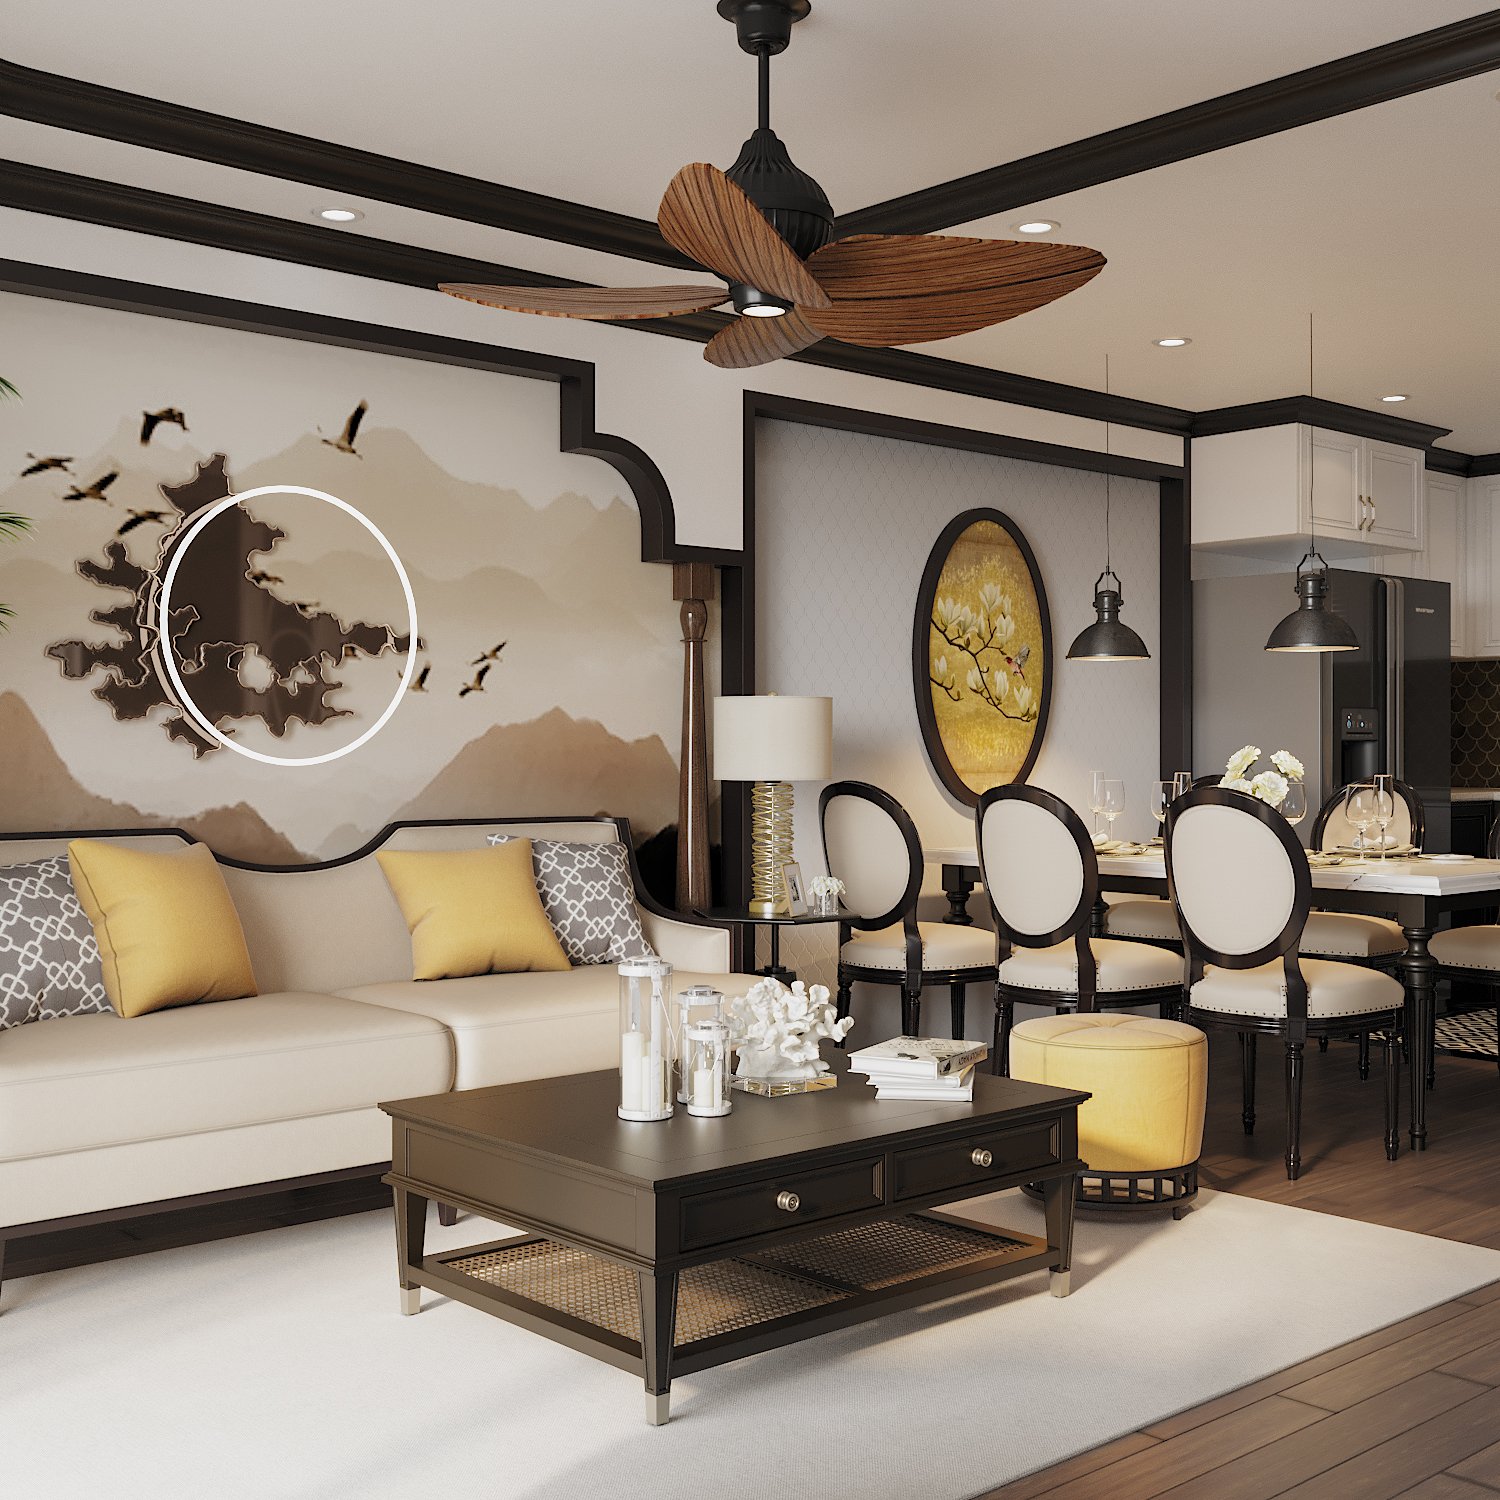 Liền kề với phòng khách là phòng ăn sang trọng với tranh tường màu vàng cùng tông với đôn ngồi và gối tựa sofa phòng khách, tạo sự kết nối tinh tế.